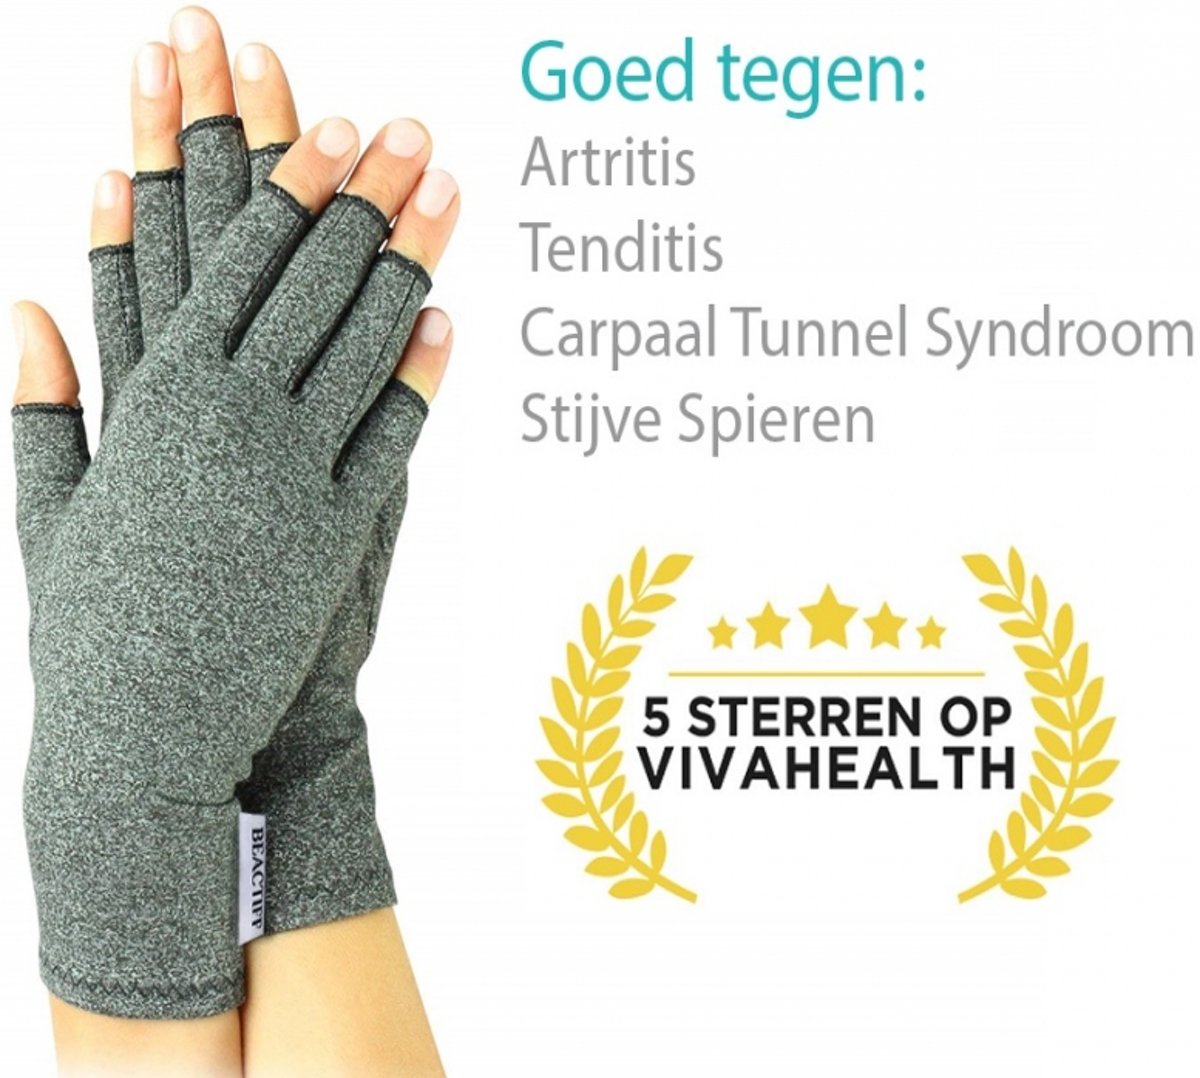 Foto van Artritis handschoenen (Maat XL), artrose reuma compressie handschoen zonder toppen, ook voor tendinitis en carpaal tunnel syndroom maat XL (ook te verkrijgen in S/M/L)